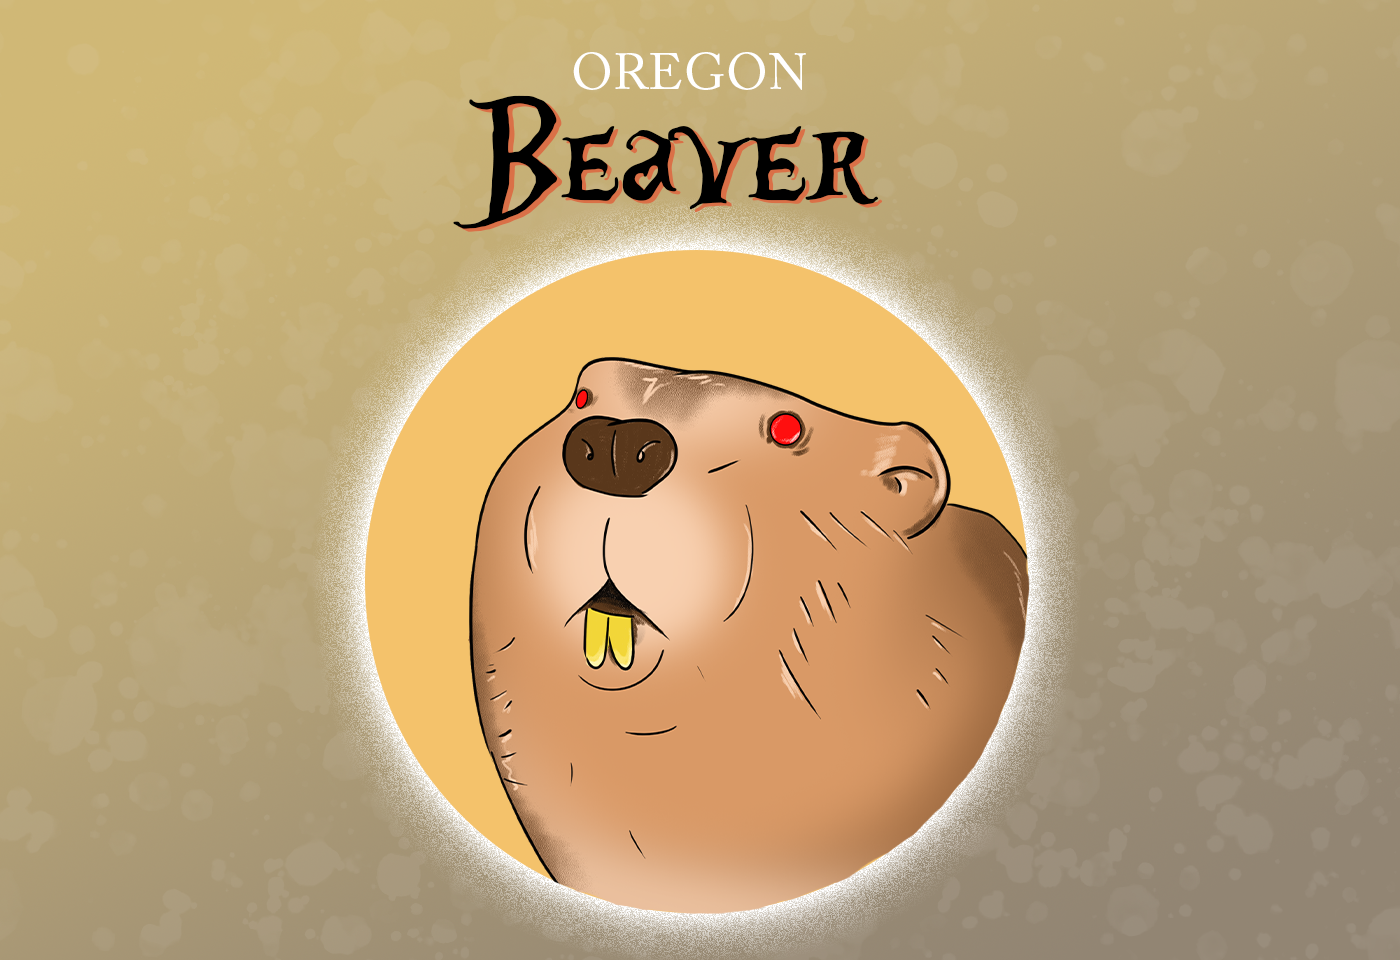 Beaver Oregon State Animal